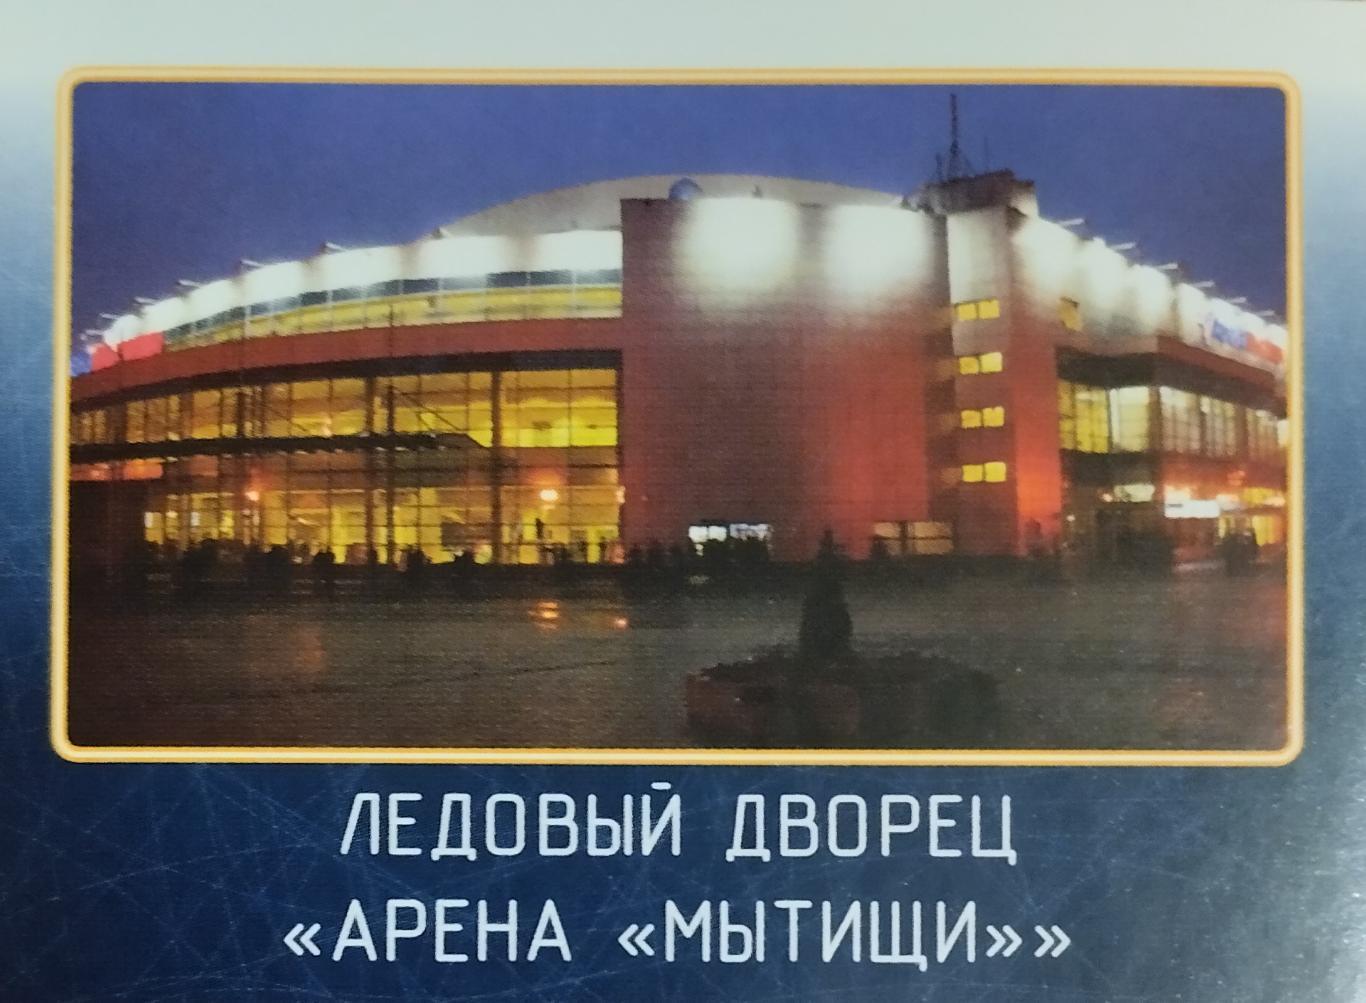 Наклейка. SeReal КХЛ 2011/2012. №02. Атлант Мытищи. Ледовый дворец Арена Мытищи.